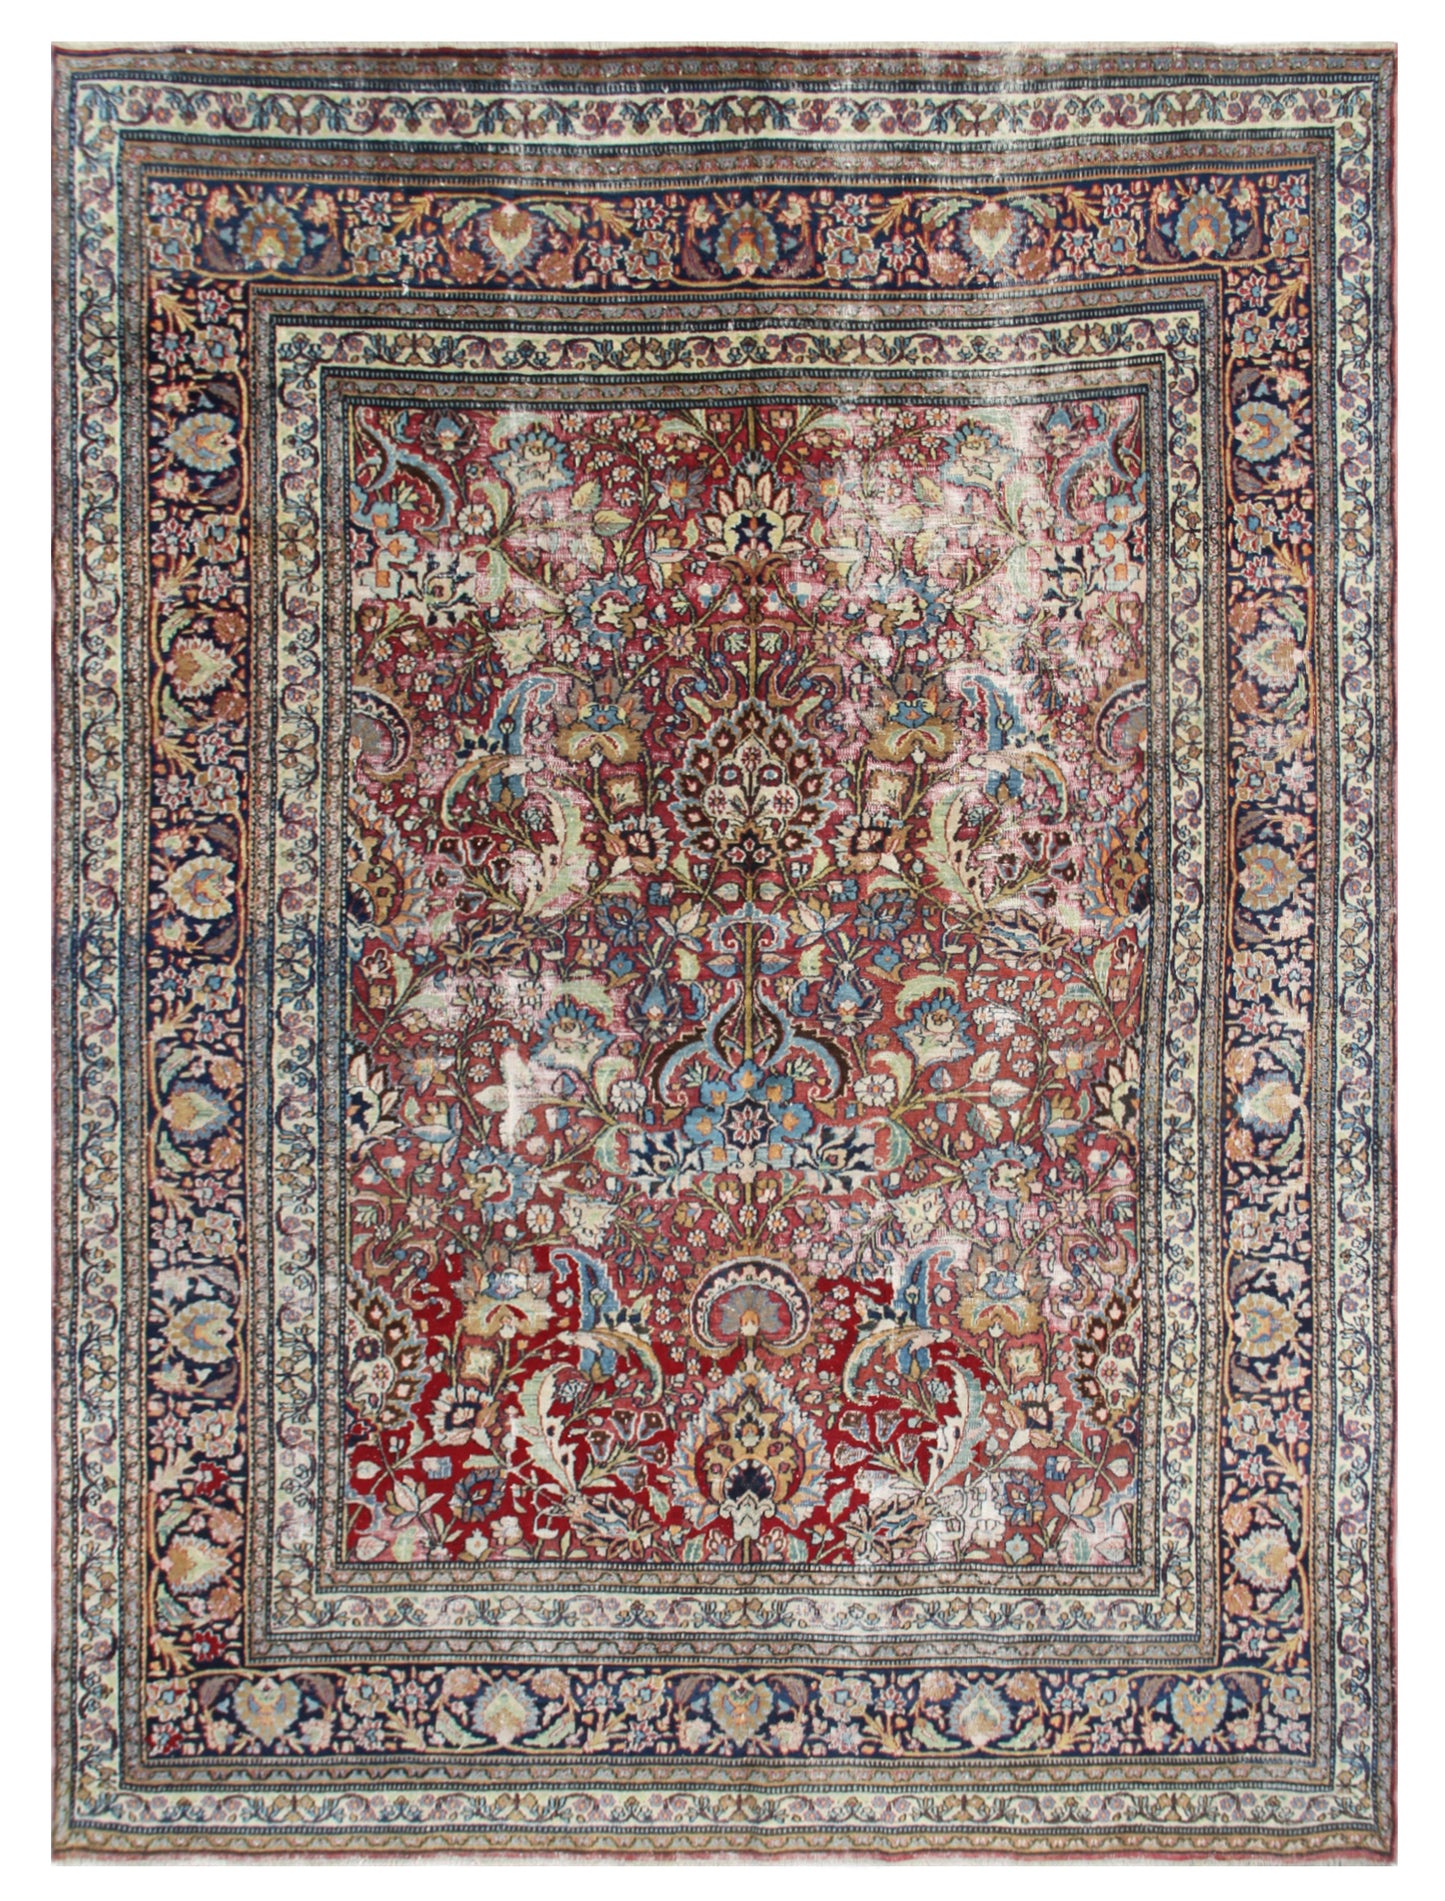 9'x12' Burgundy Antique Persian Mashhad Rug